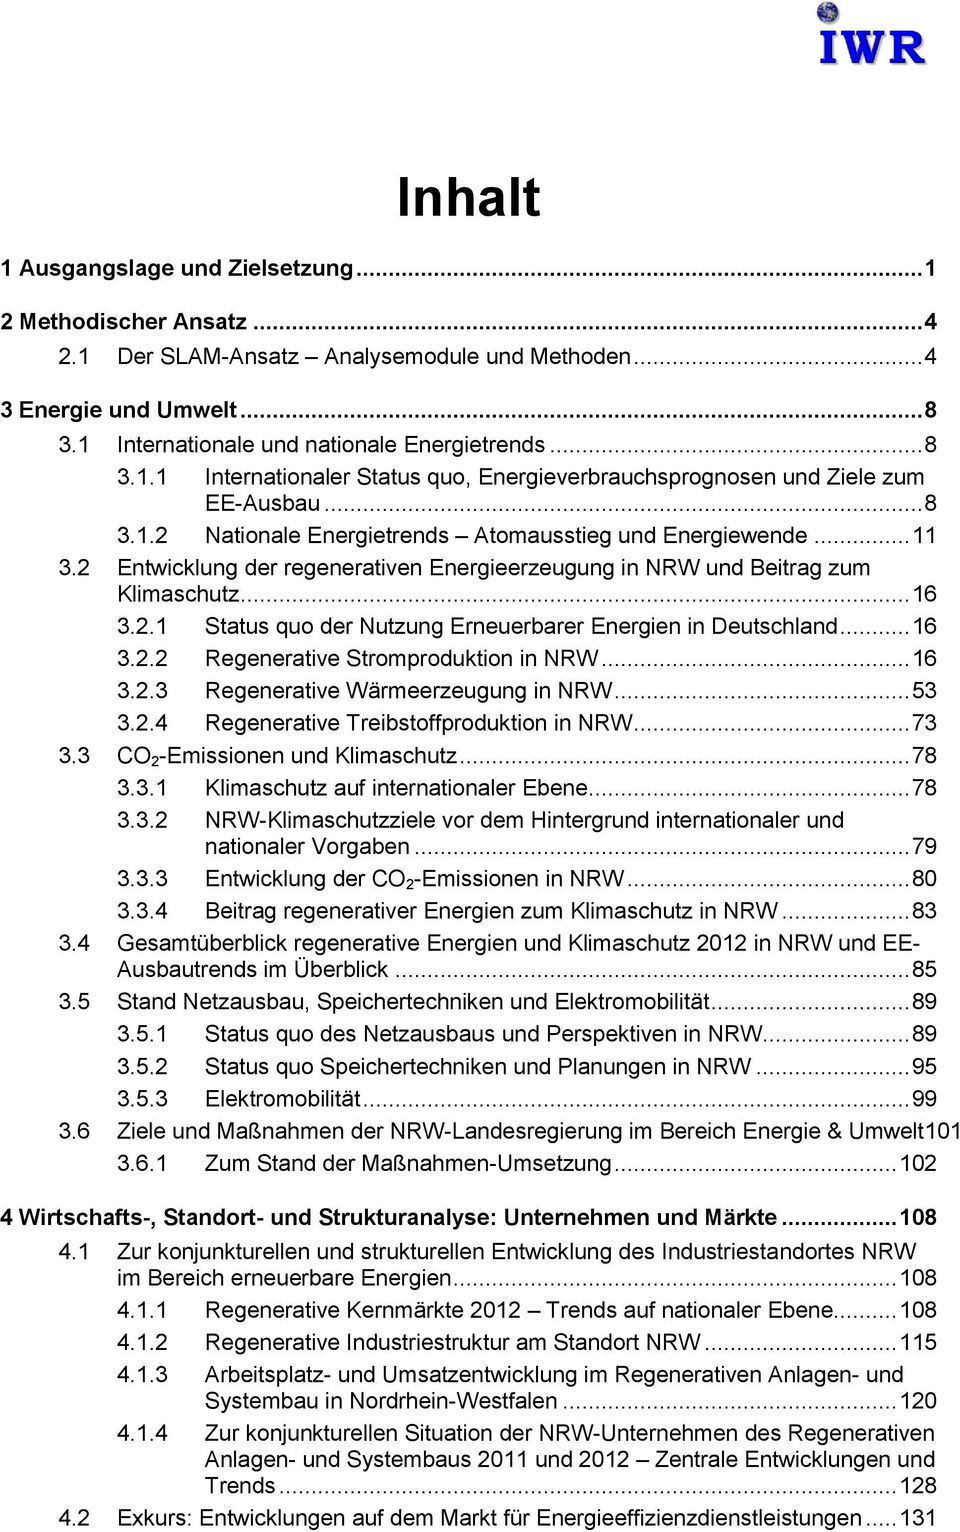 .. 16 3.2.2 Regenerative Stromproduktion in NRW... 16 3.2.3 Regenerative Wärmeerzeugung in NRW... 53 3.2.4 Regenerative Treibstoffproduktion in NRW... 73 3.3 CO 2 -Emissionen und Klimaschutz... 78 3.